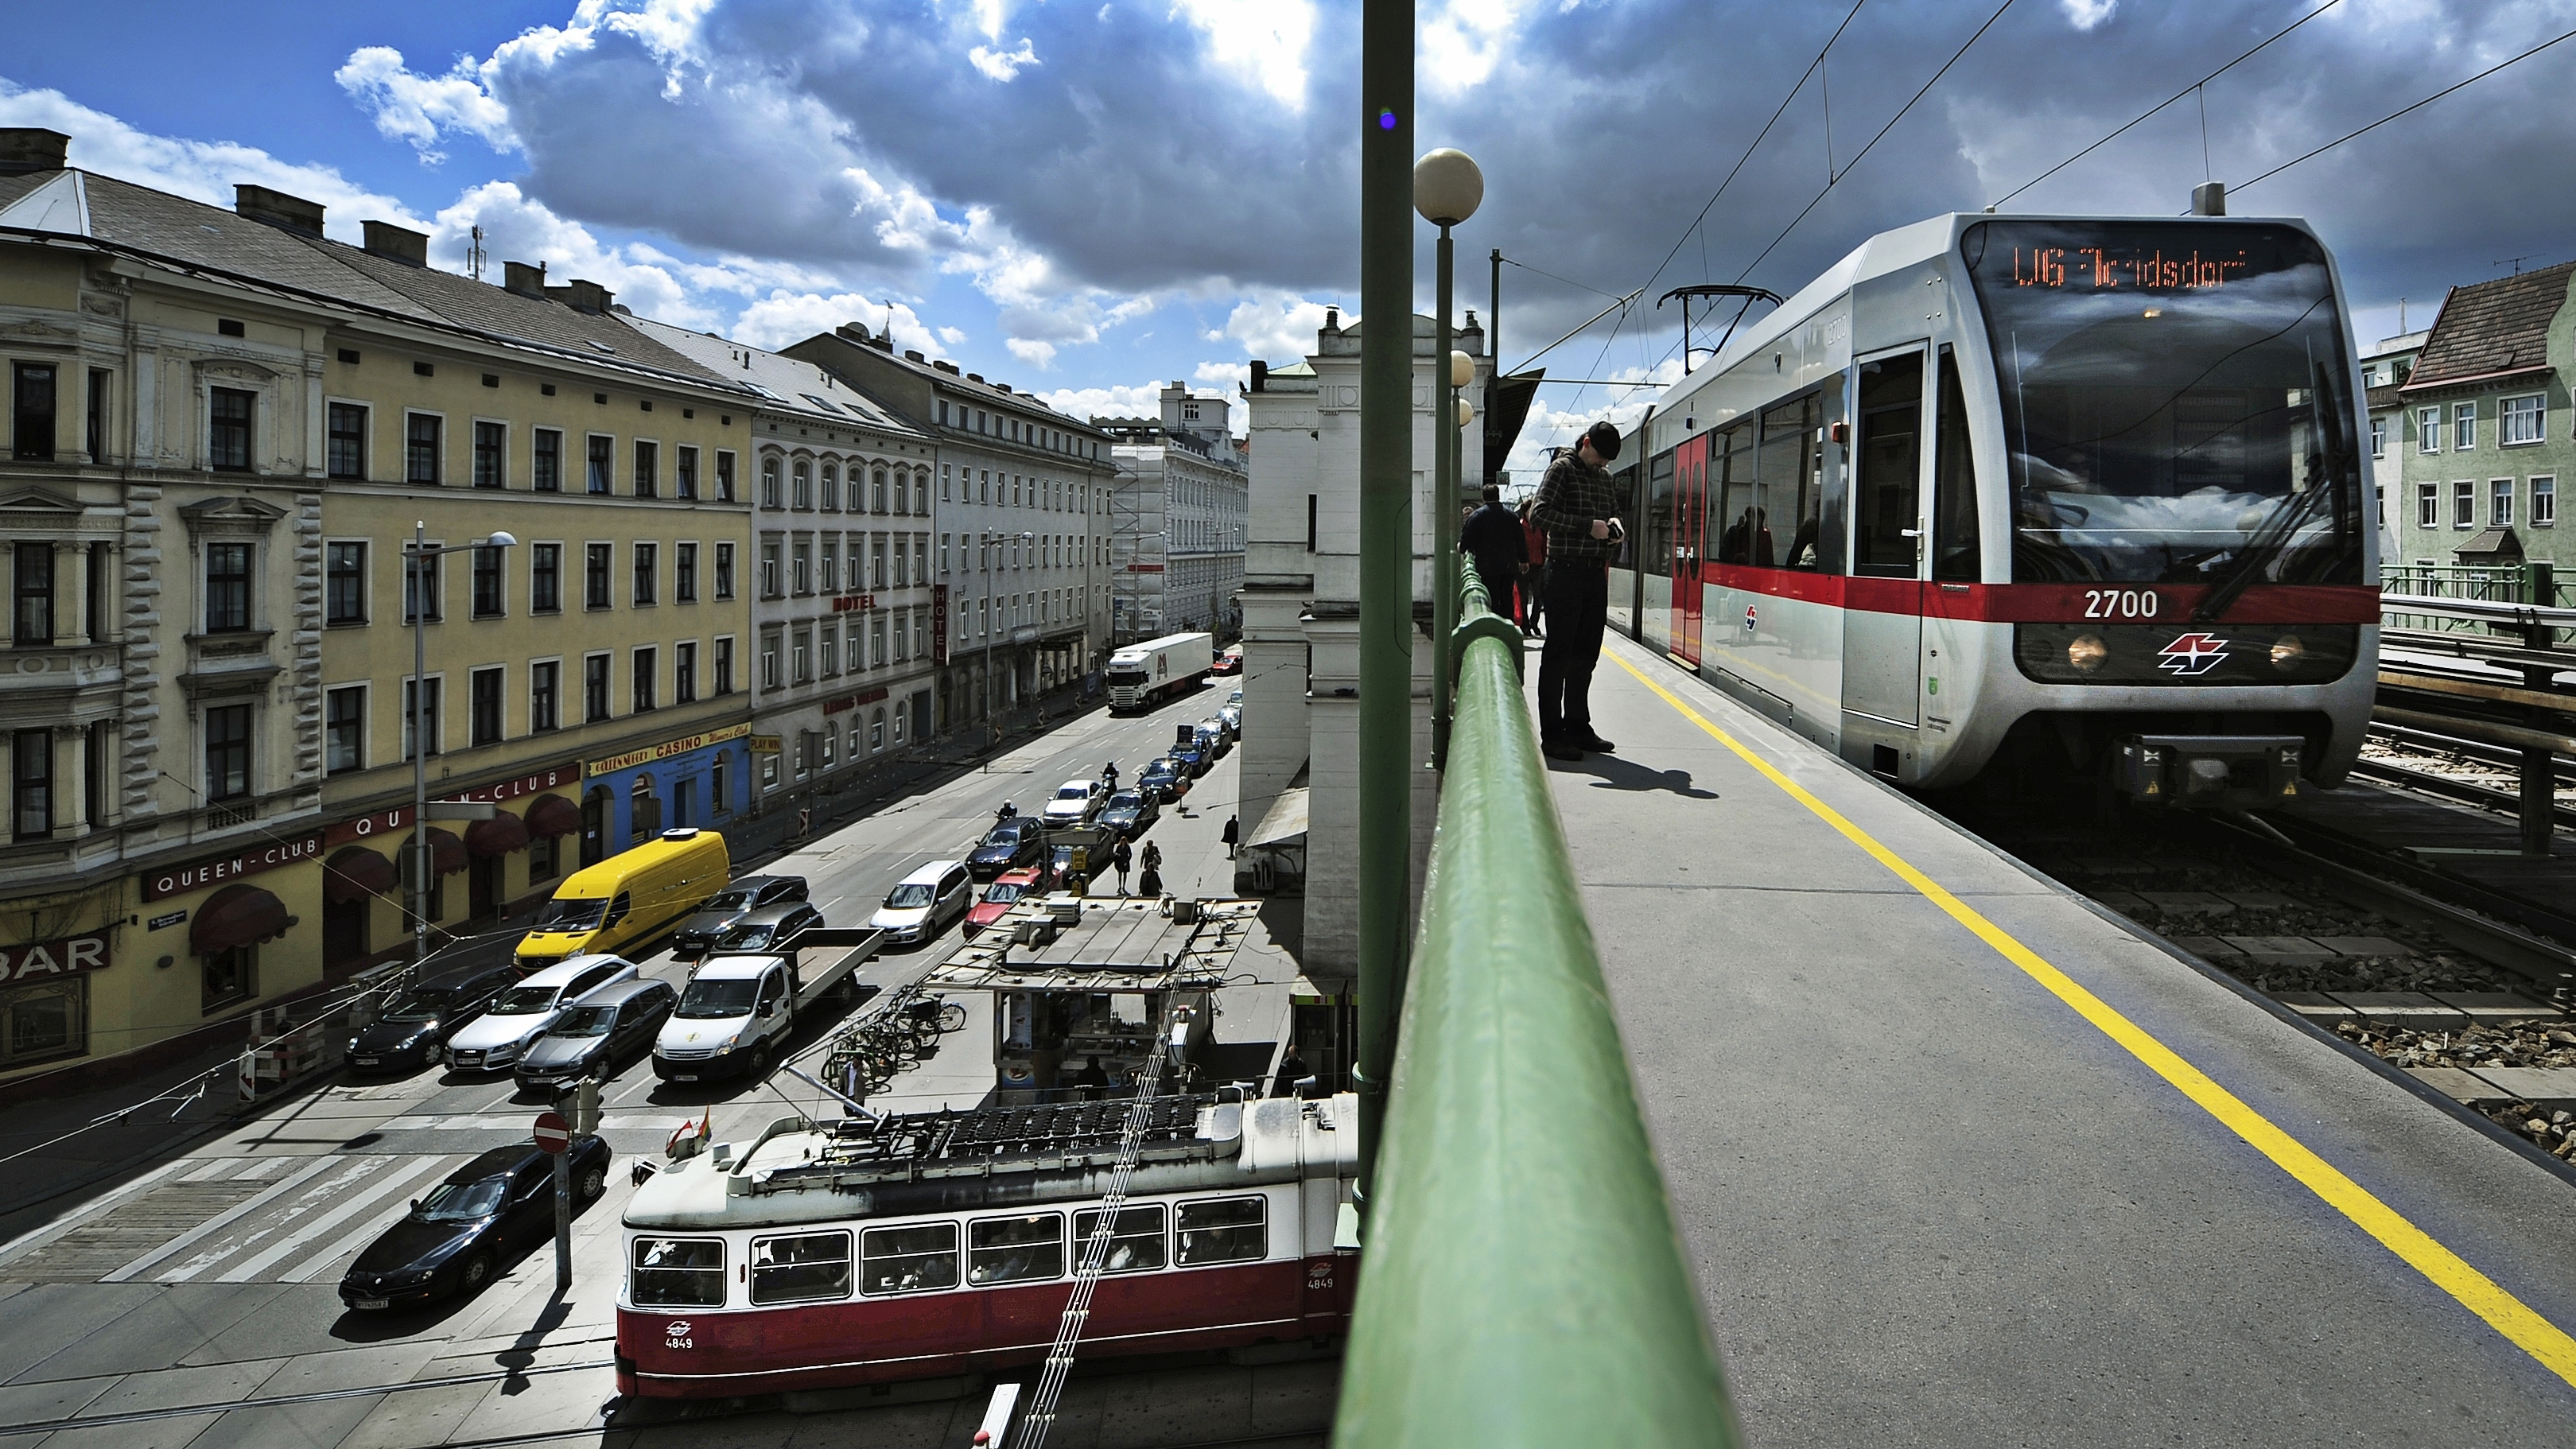 Bild von U-Bahn-Linie U6, die über die Brücke bei der Station Alser Straße fährt, während unter der Brücke eine Straßenbahn gerade ihre Station verlässt.